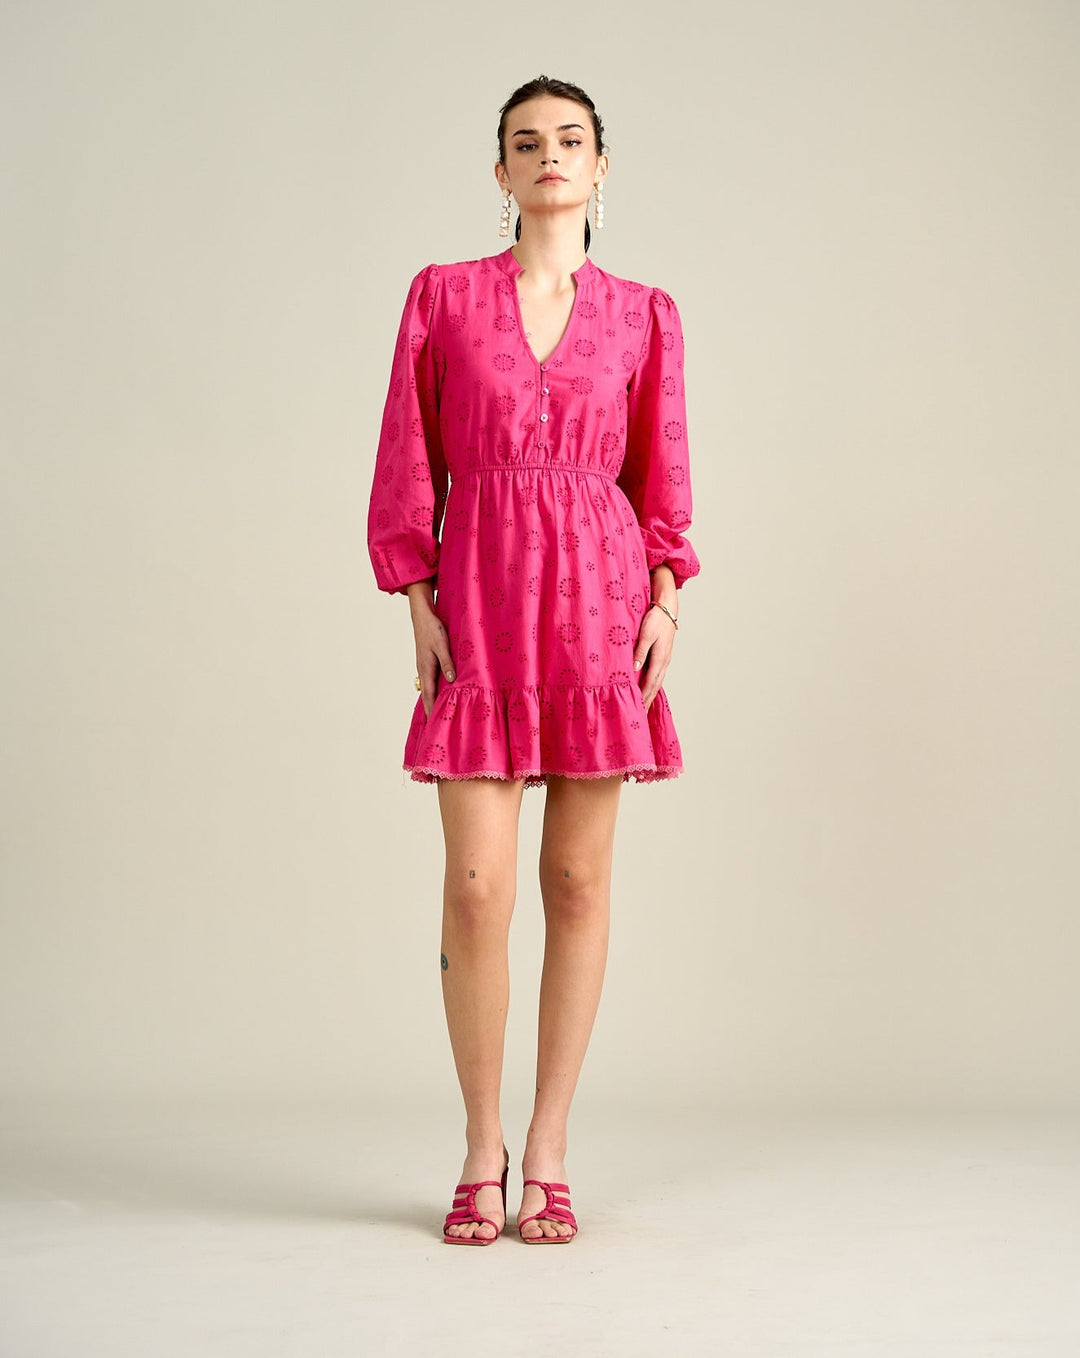 Sophie Pink Dress